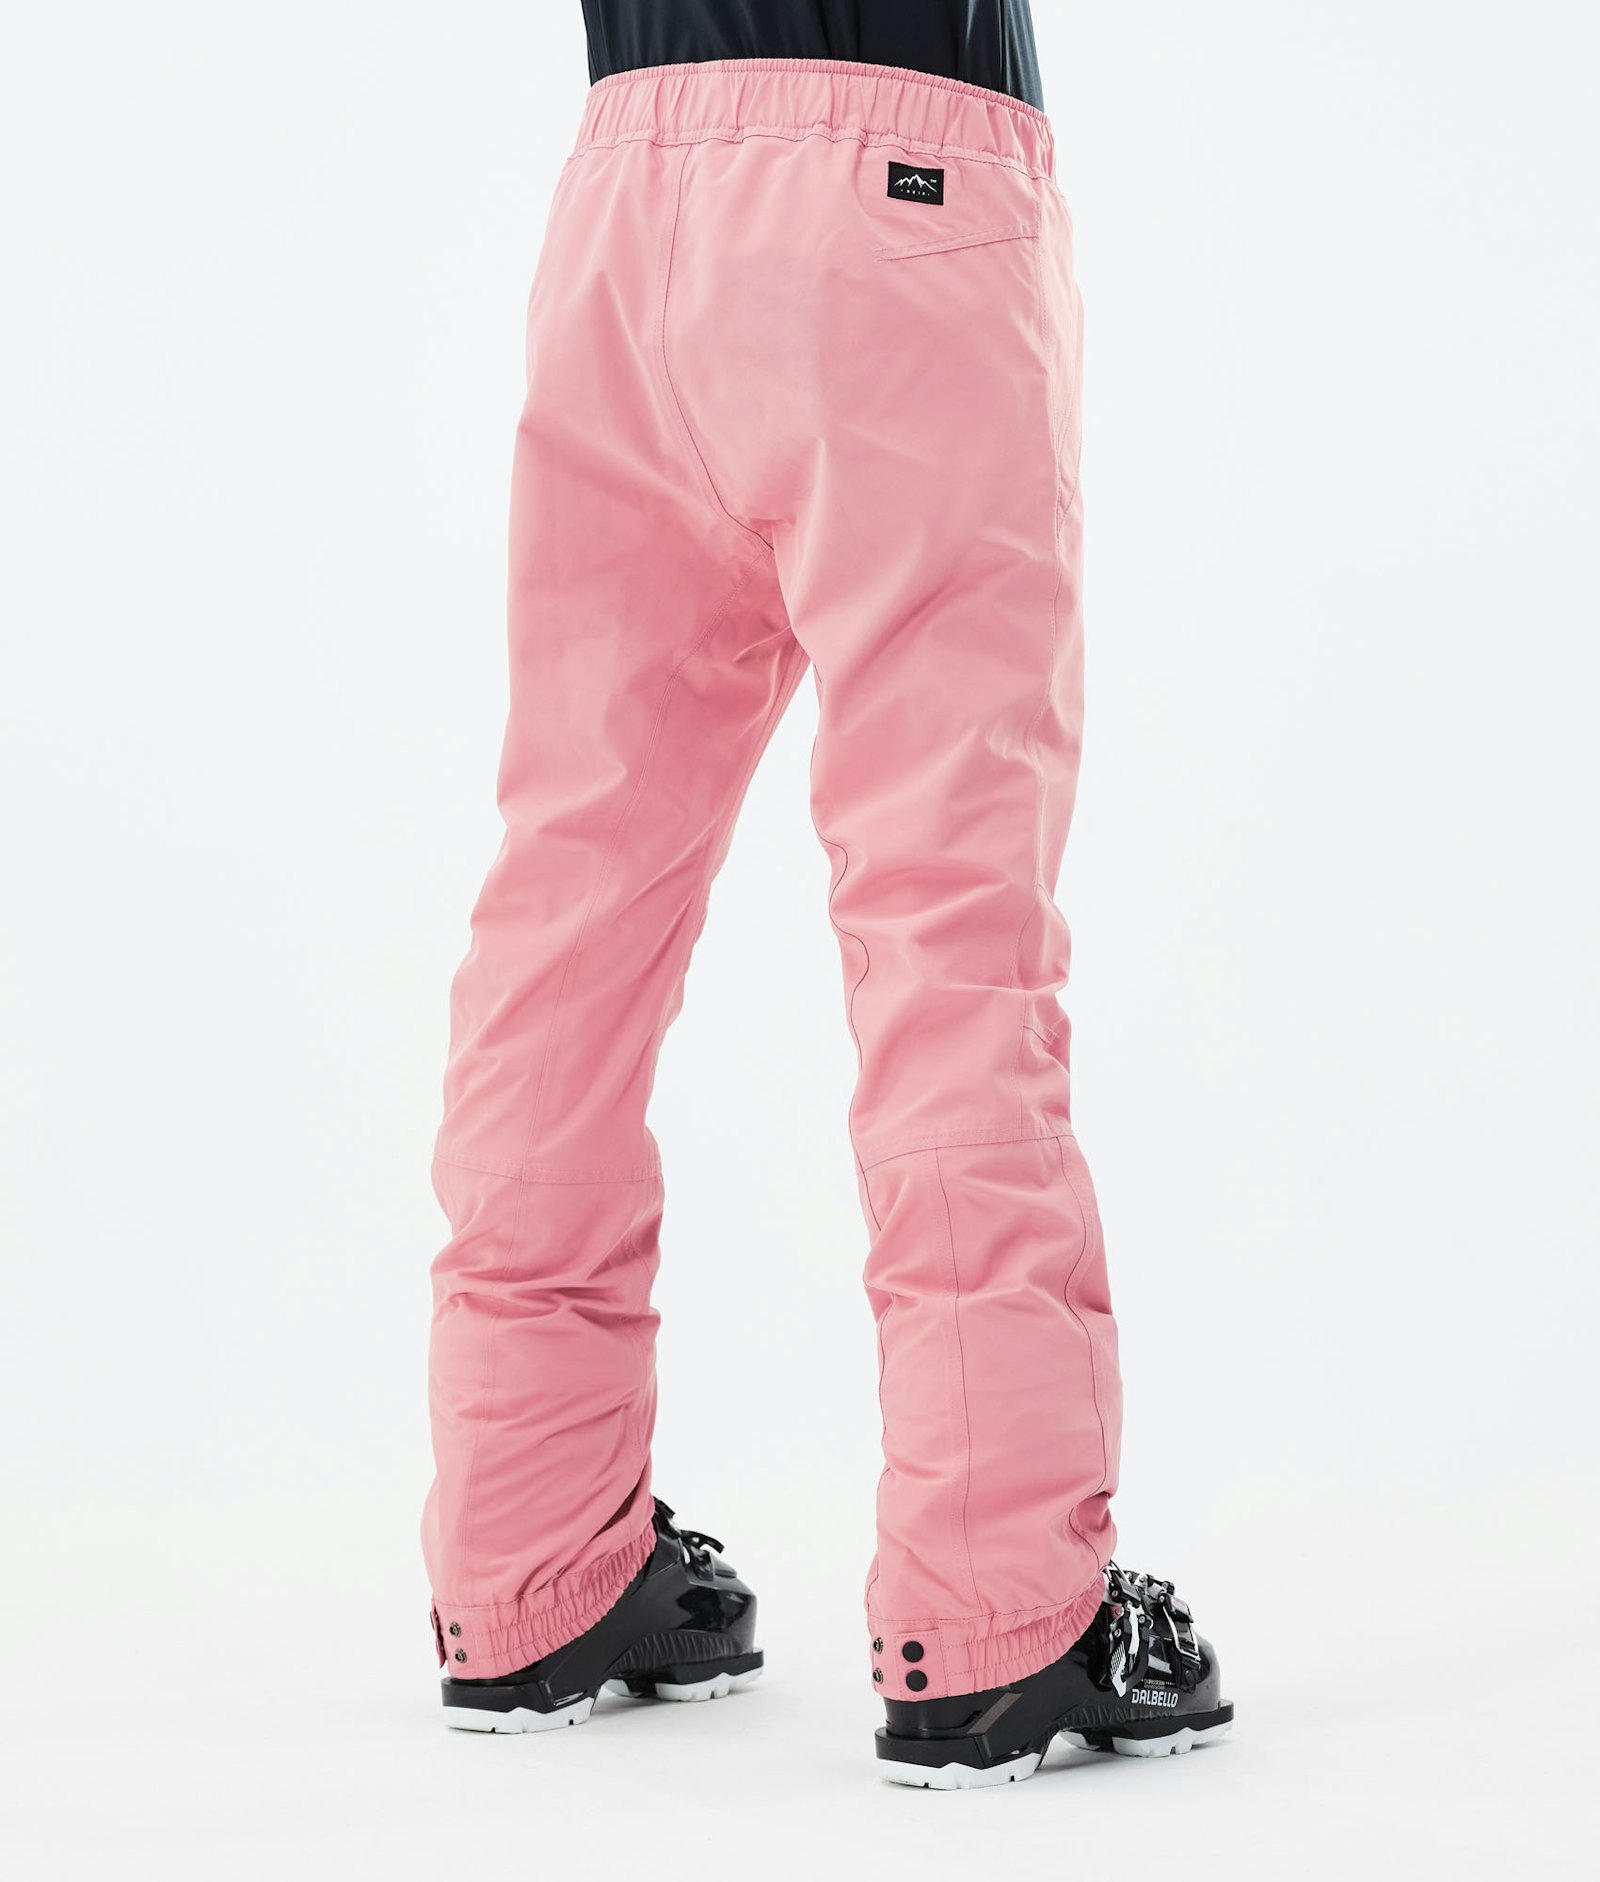 Blizzard W 2021 Pantalon de Ski Femme Pink